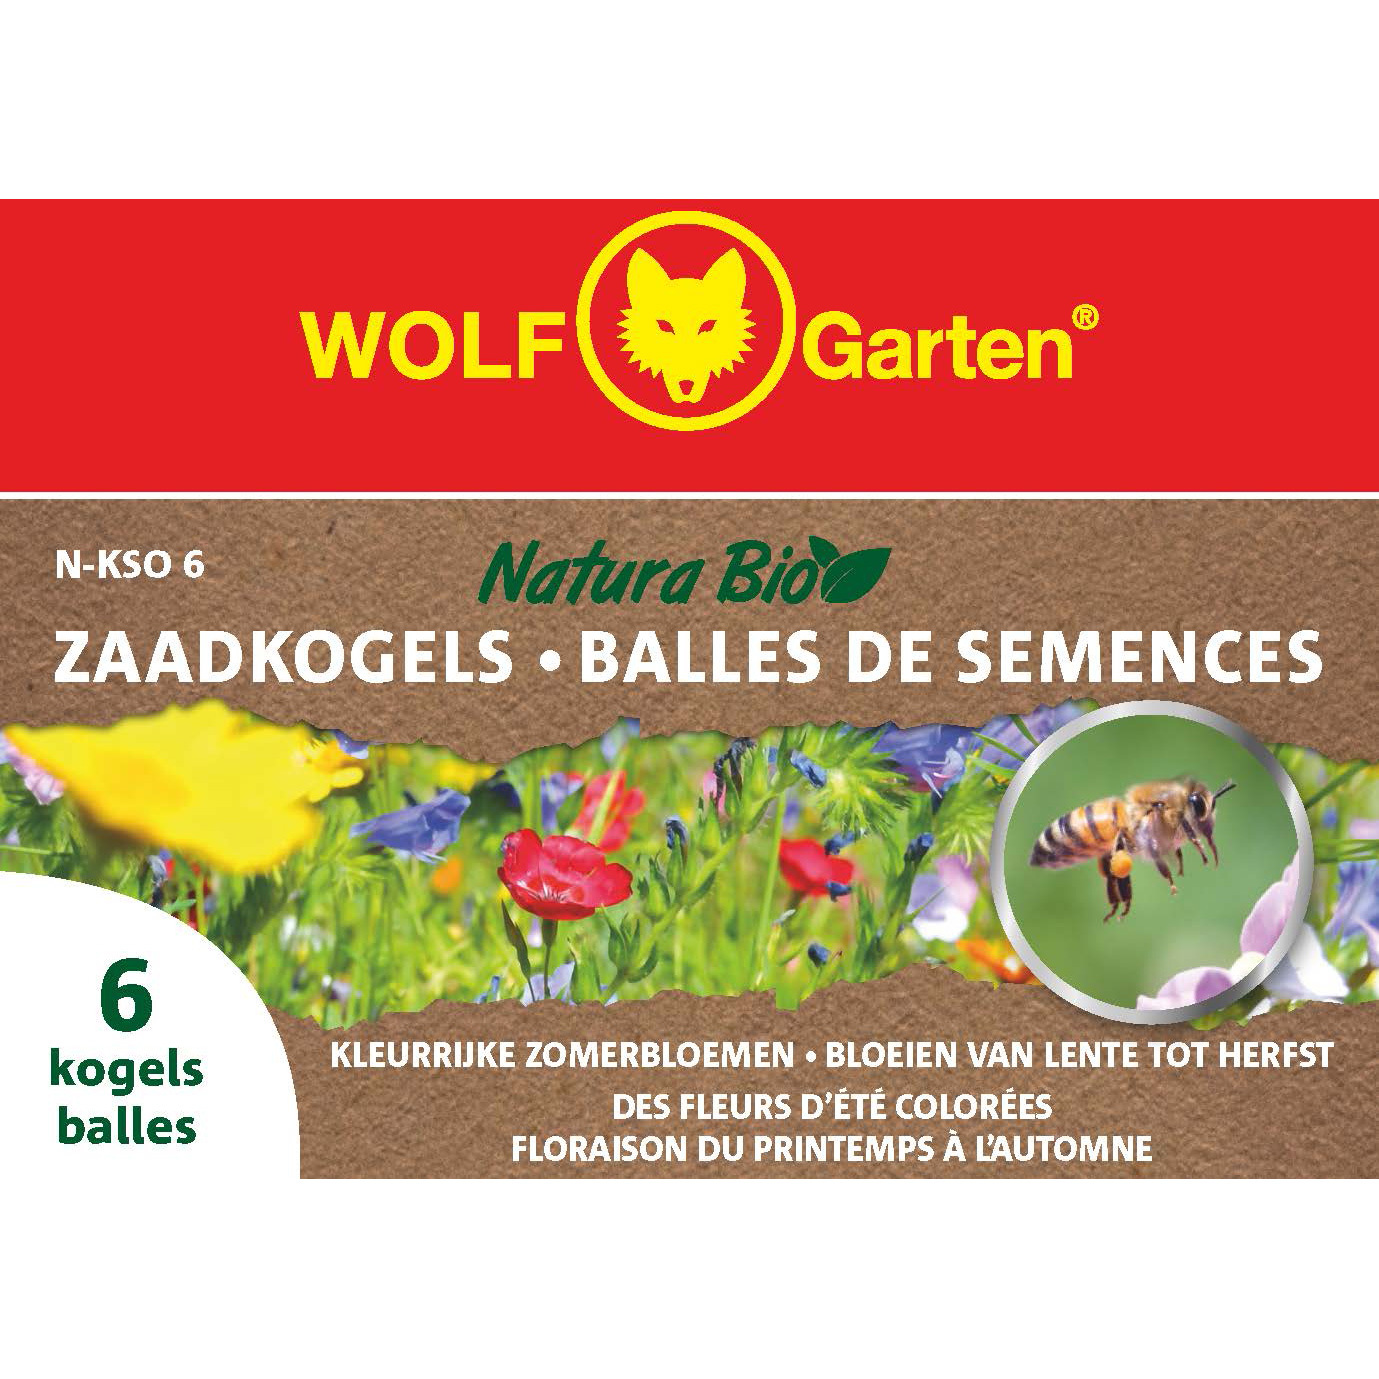 wolf-garten-natura-bio-zaadkogels-1892905.jpg